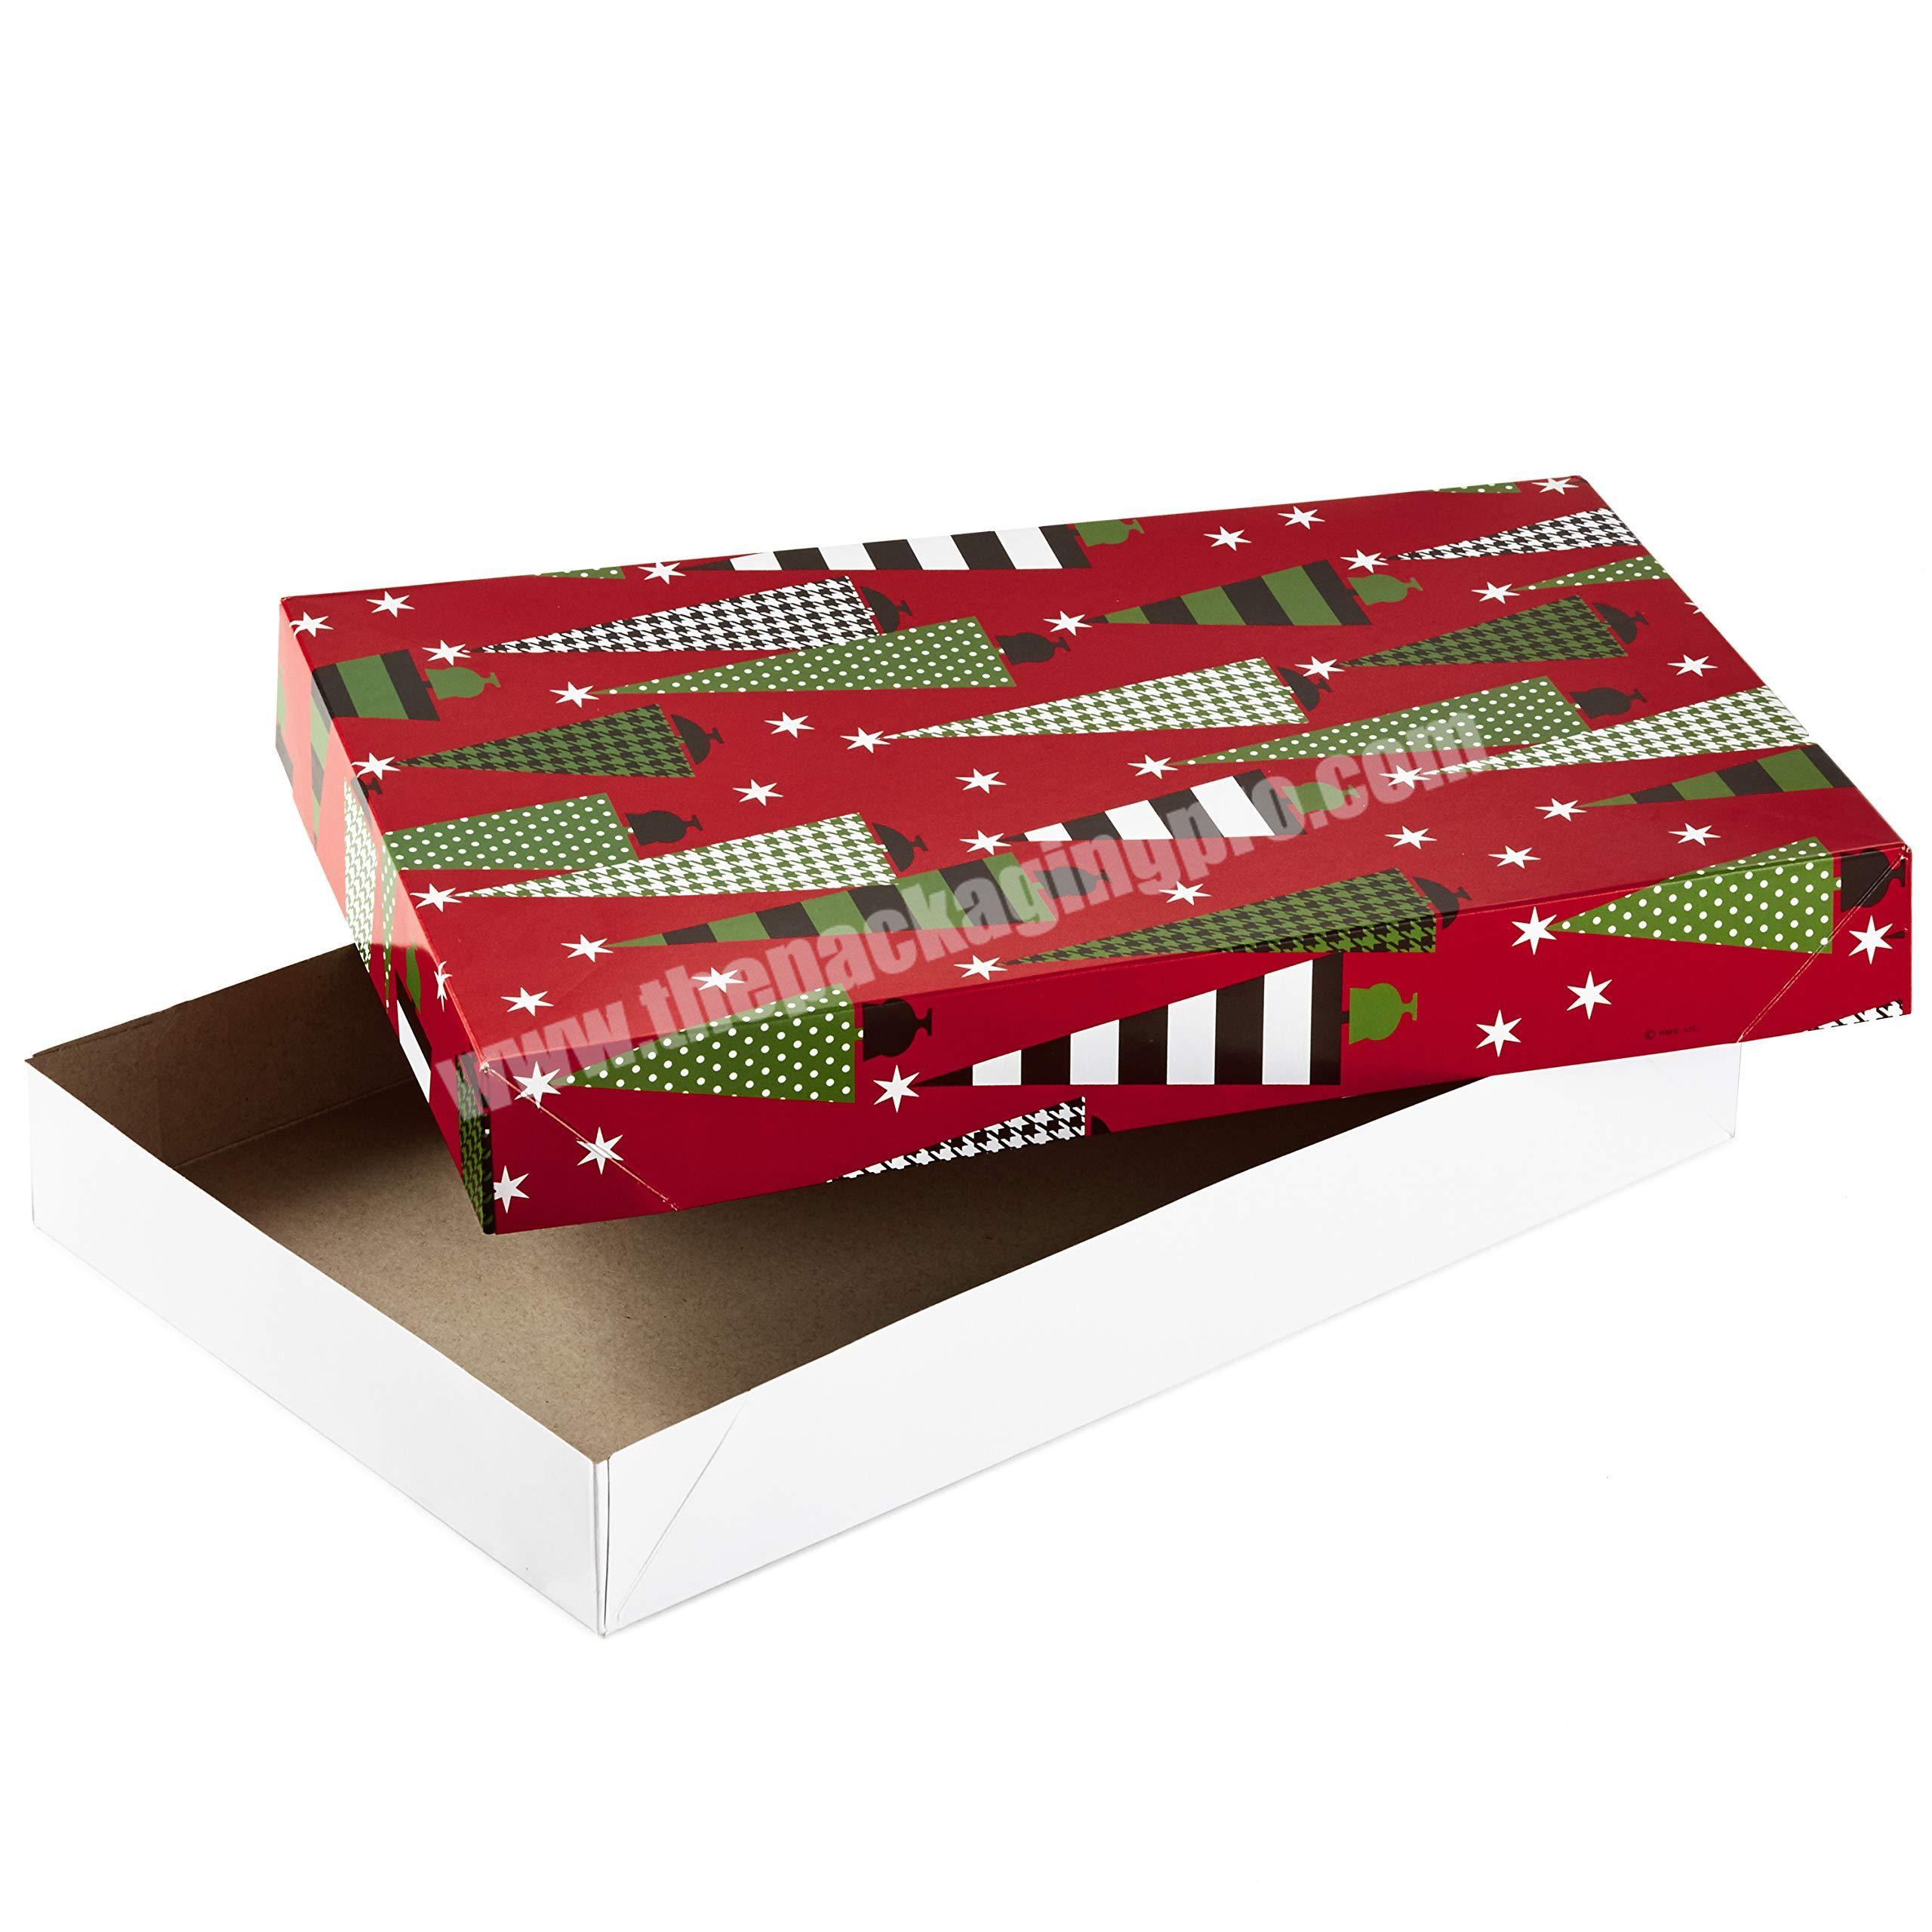 Chocolate explosion box, Gift box, Christmas gift,Birthdays gift,  Anniversary